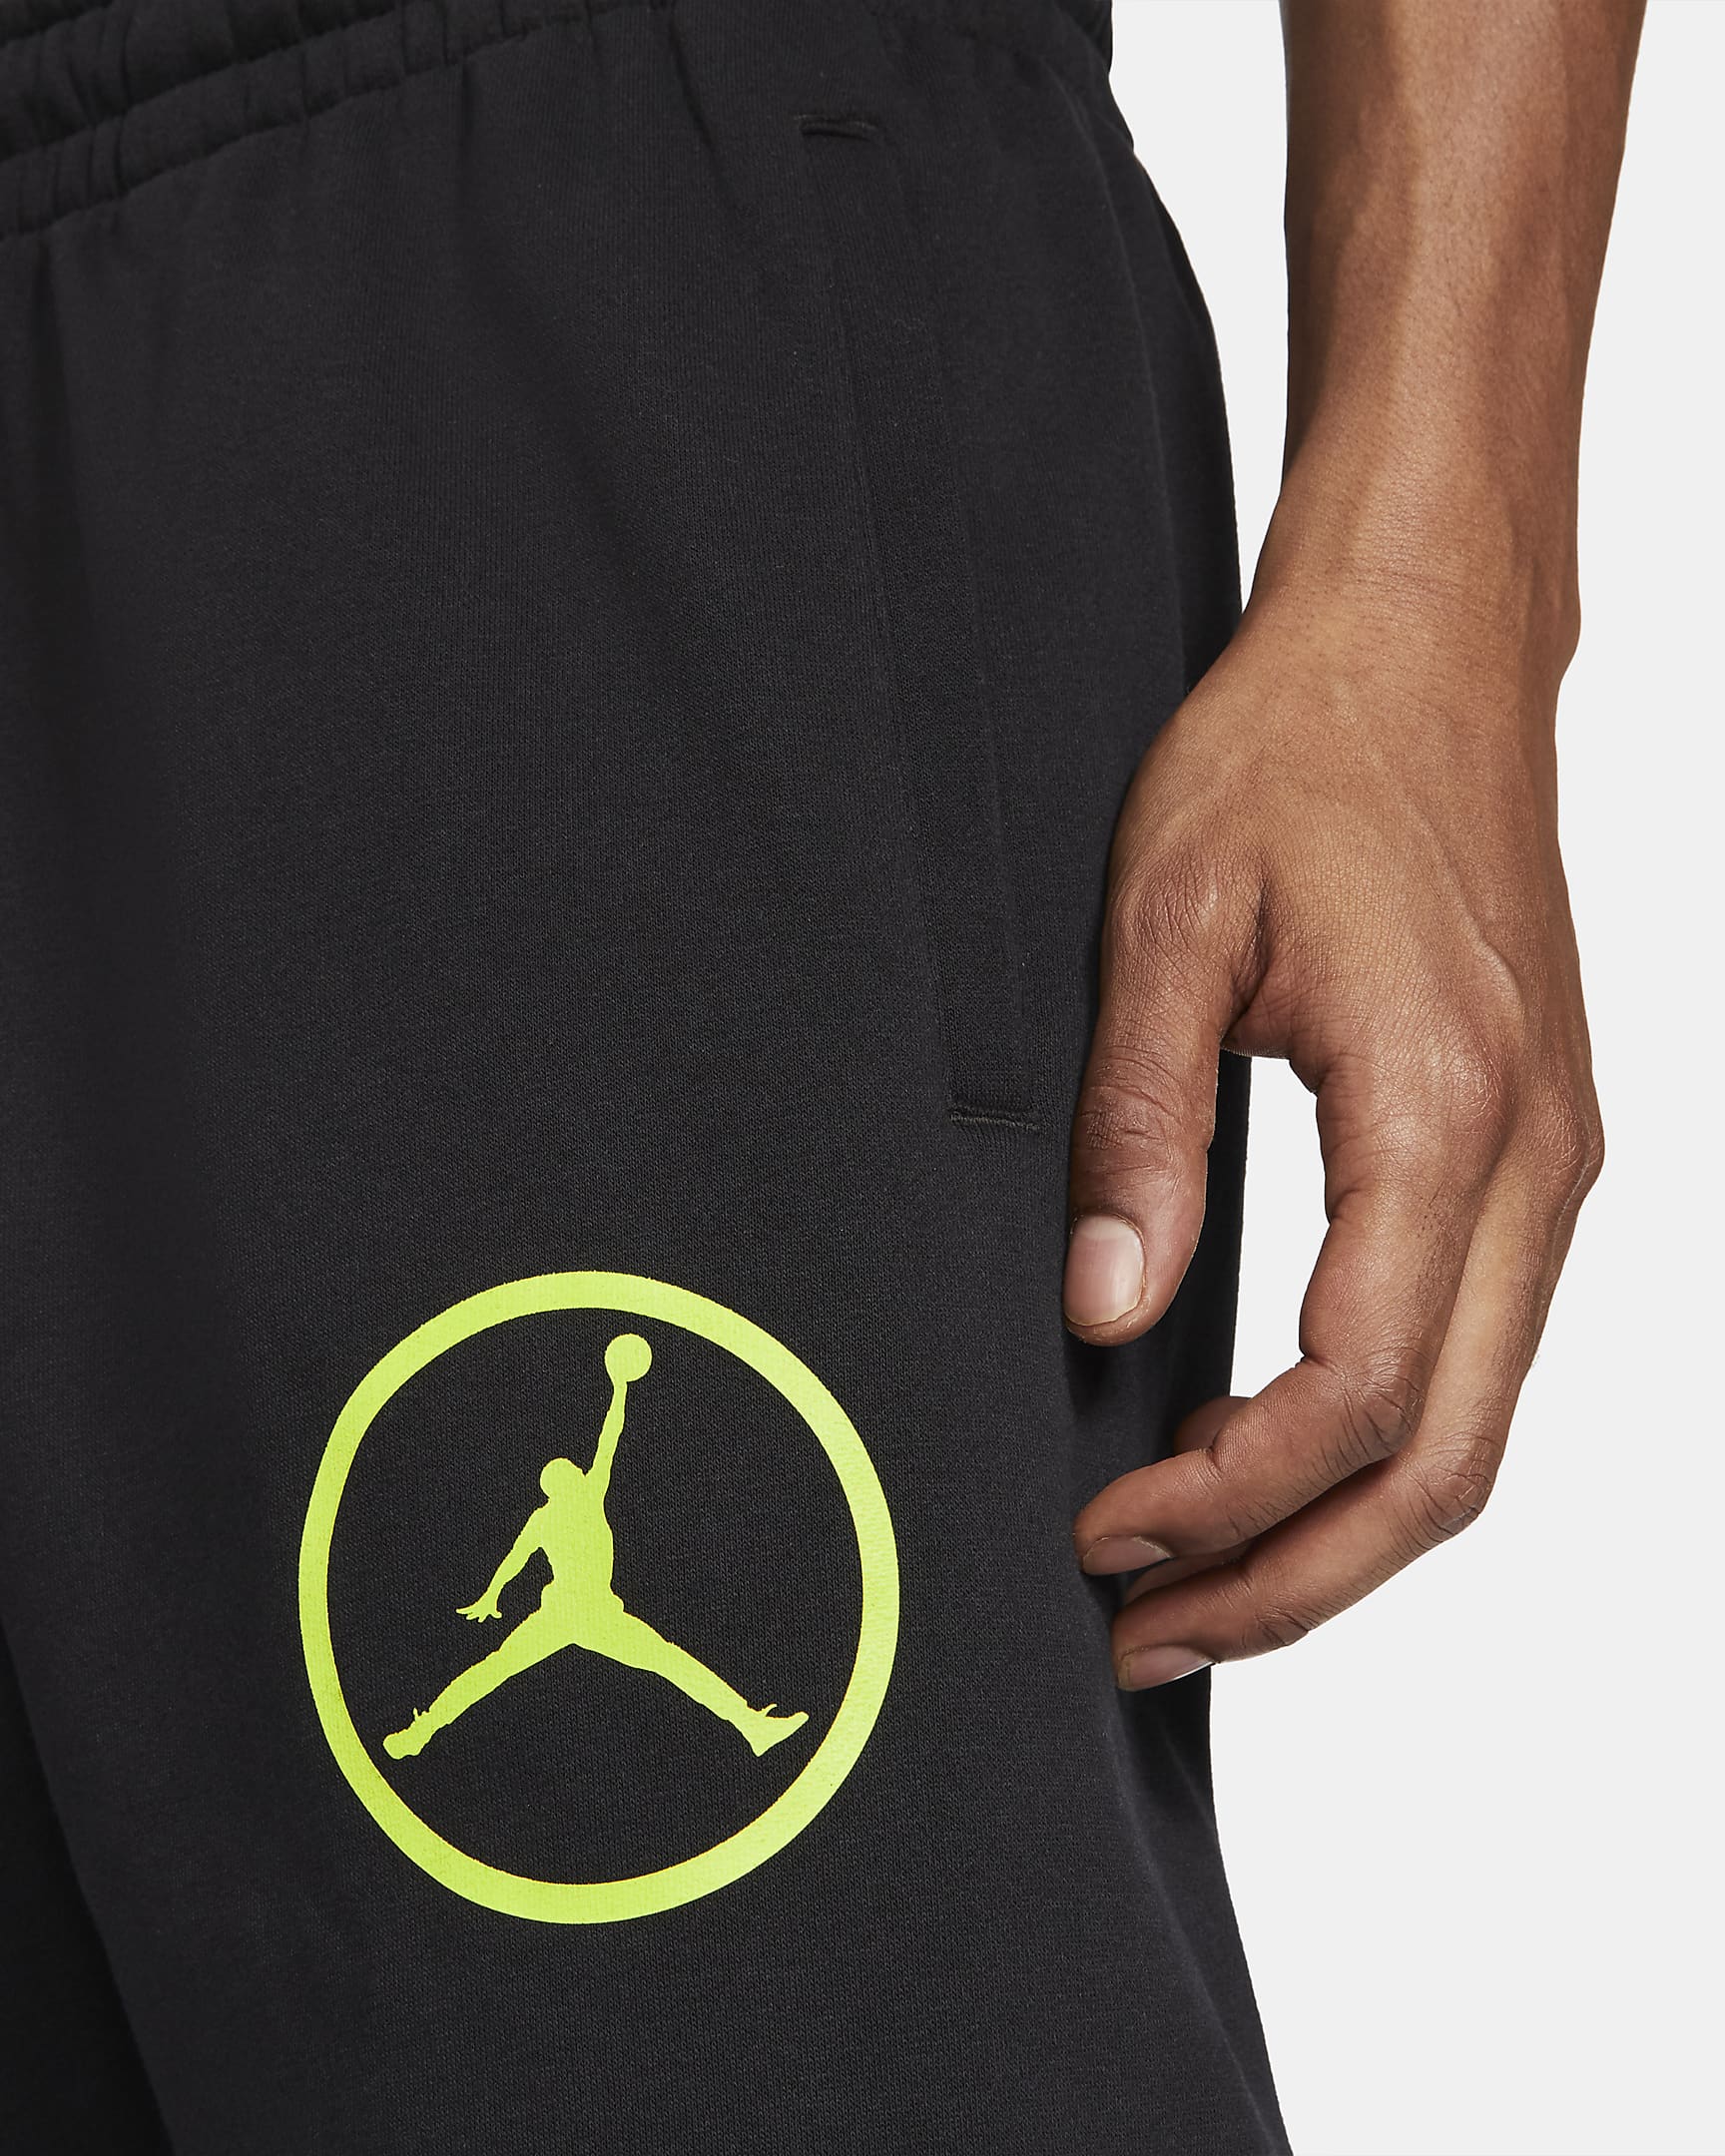 Jordan Sport DNA Men's Fleece Trousers. Nike ZA